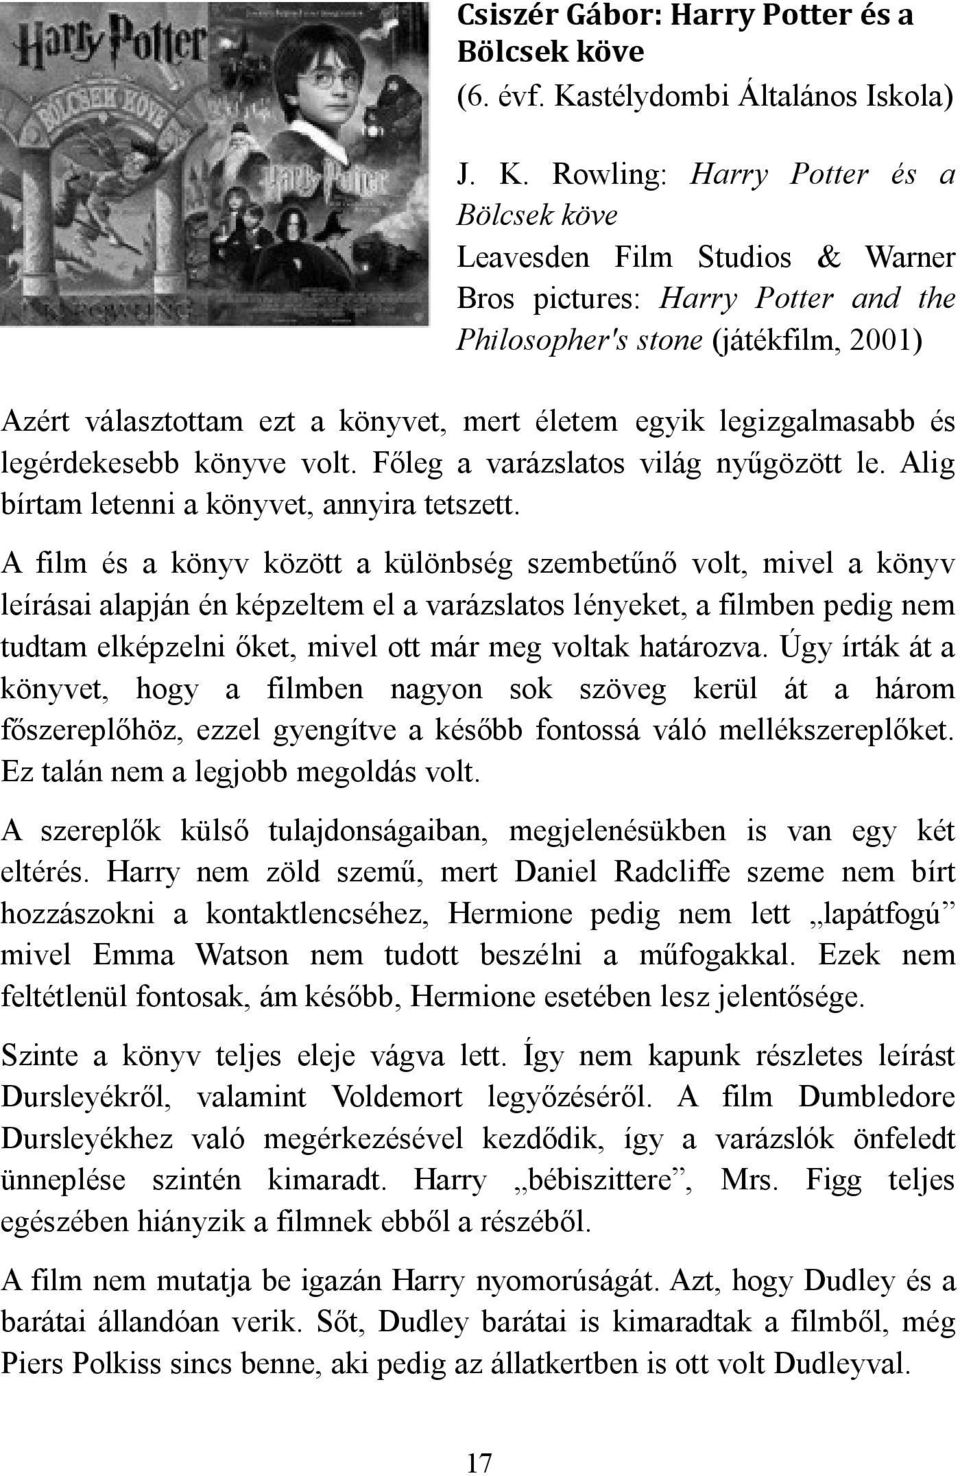 Rowling: Harry Potter és a Bölcsek köve Leavesden Film Studios & Warner Bros pictures: Harry Potter and the Philosopher's stone (játékfilm, 2001) Azért választottam ezt a könyvet, mert életem egyik